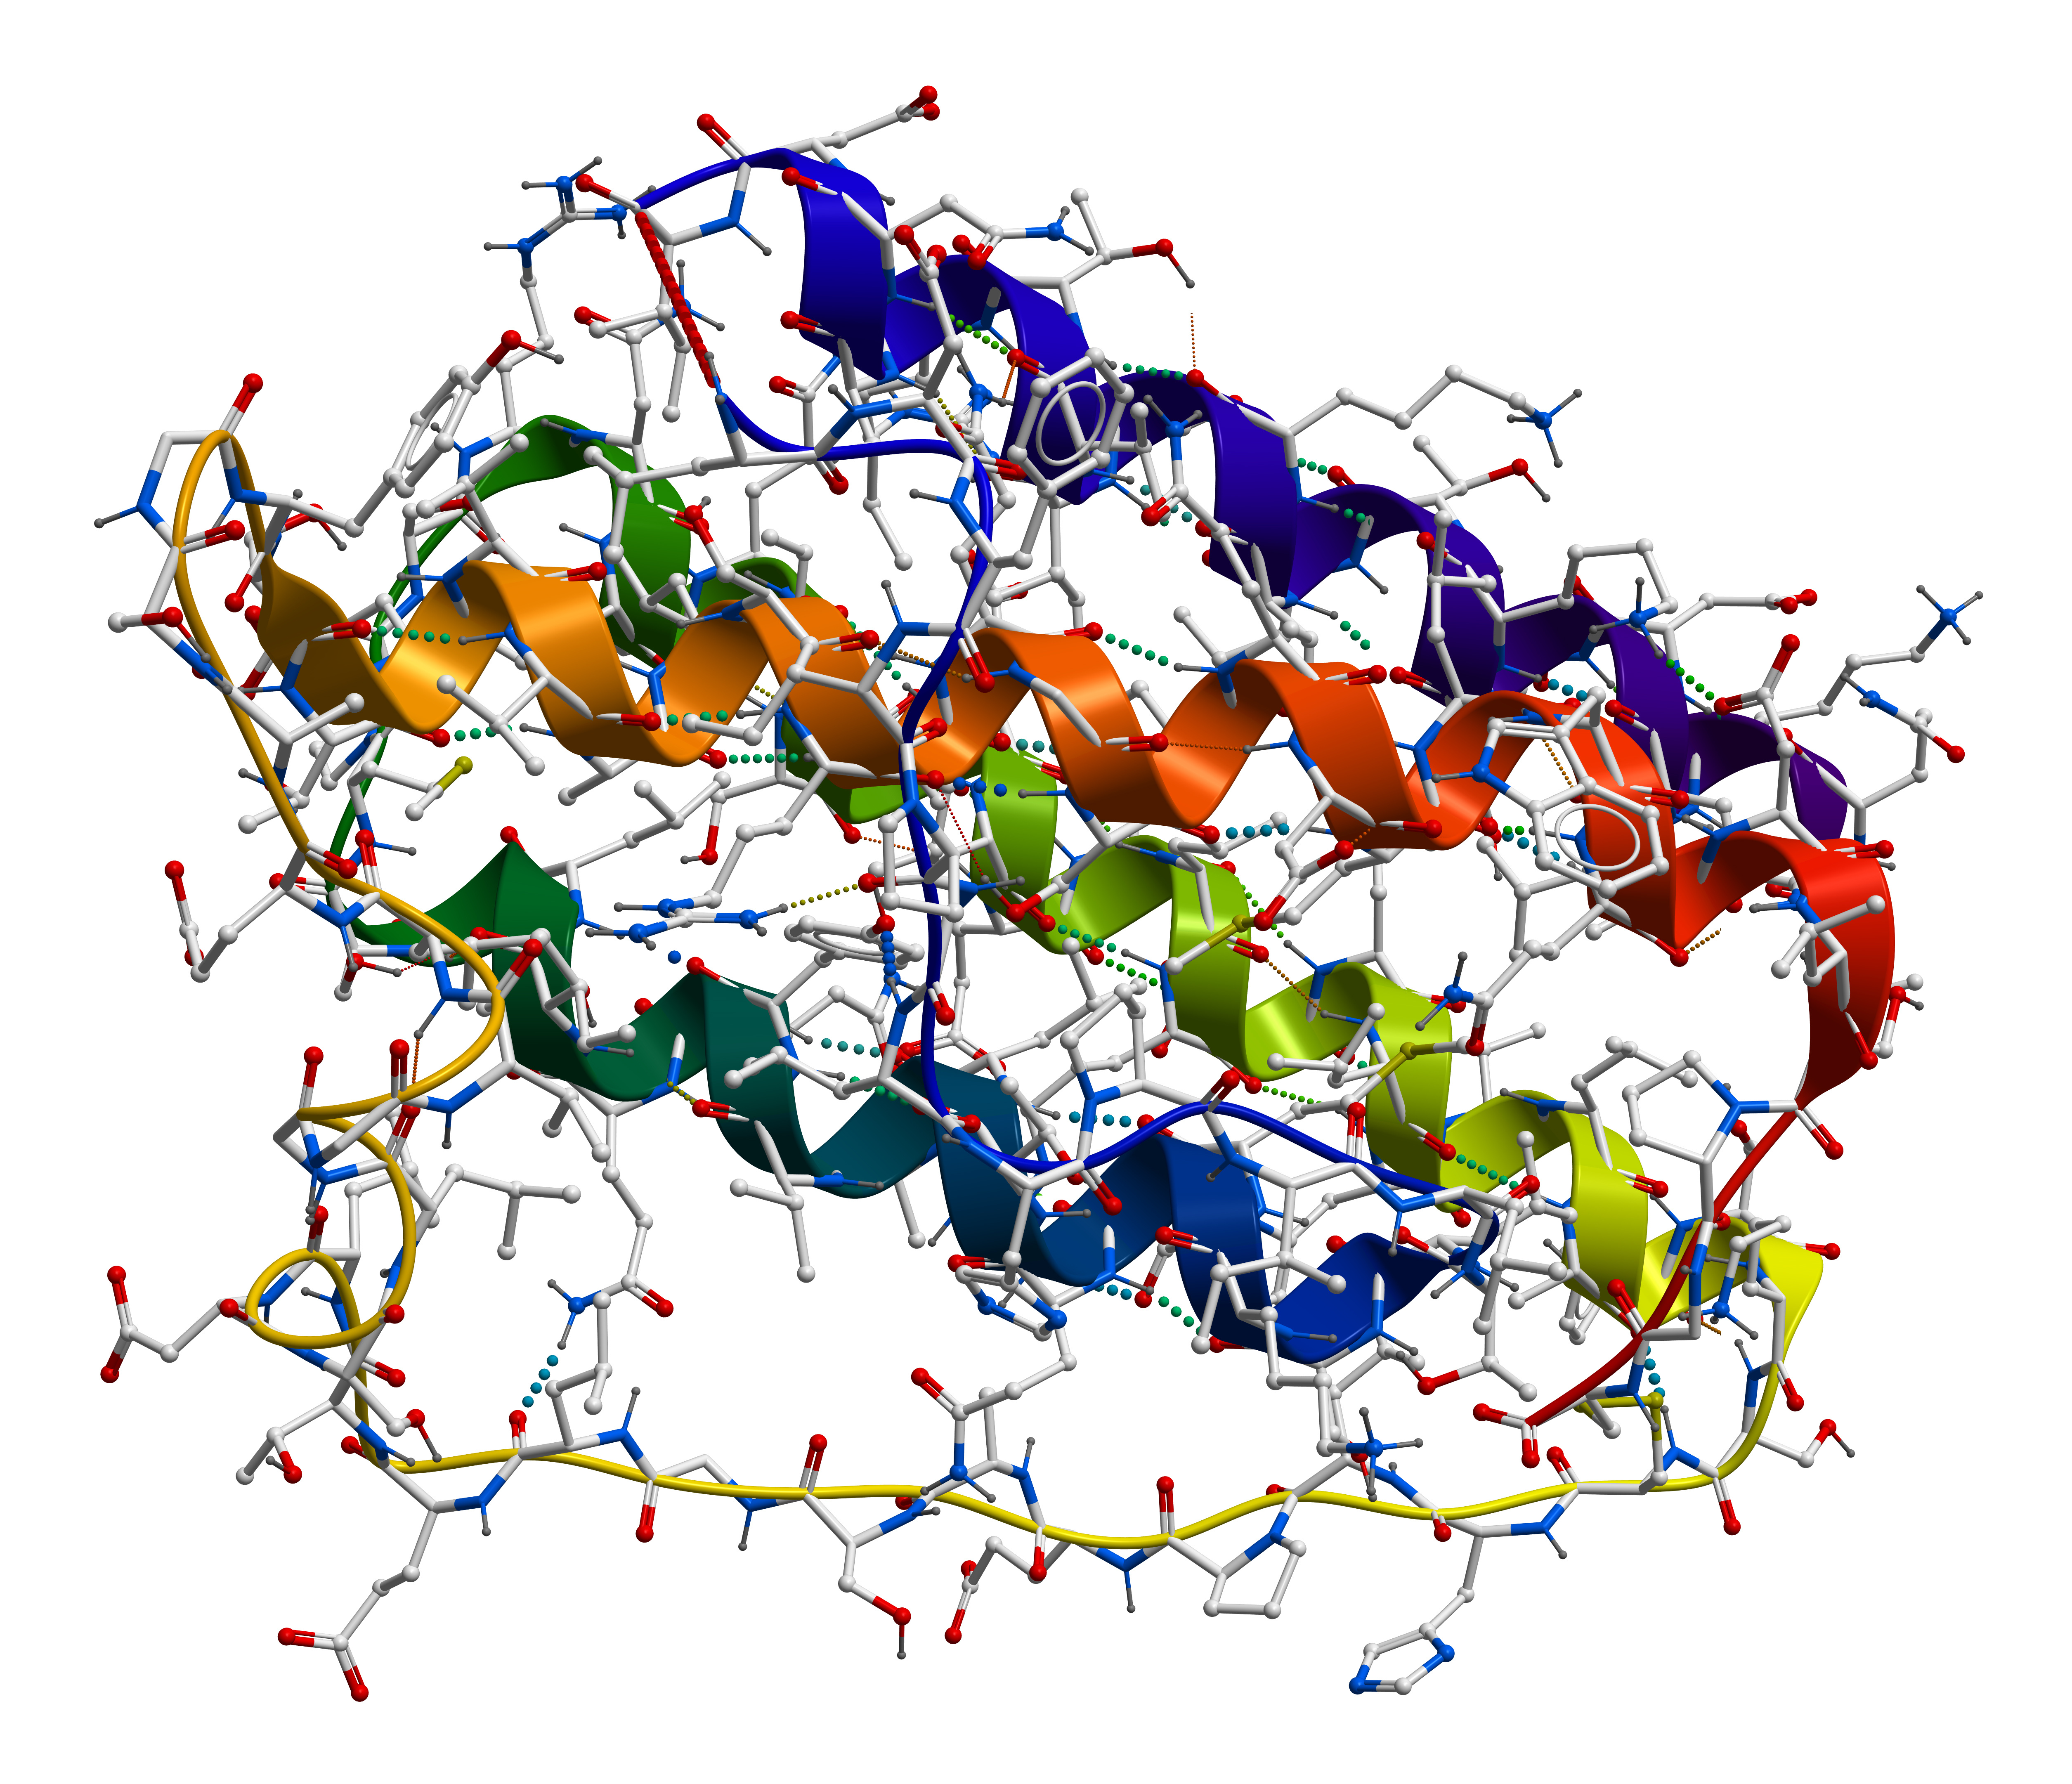 蛋白质是一种复杂的大分子聚合物,在生物中起到了生命活动承担者的